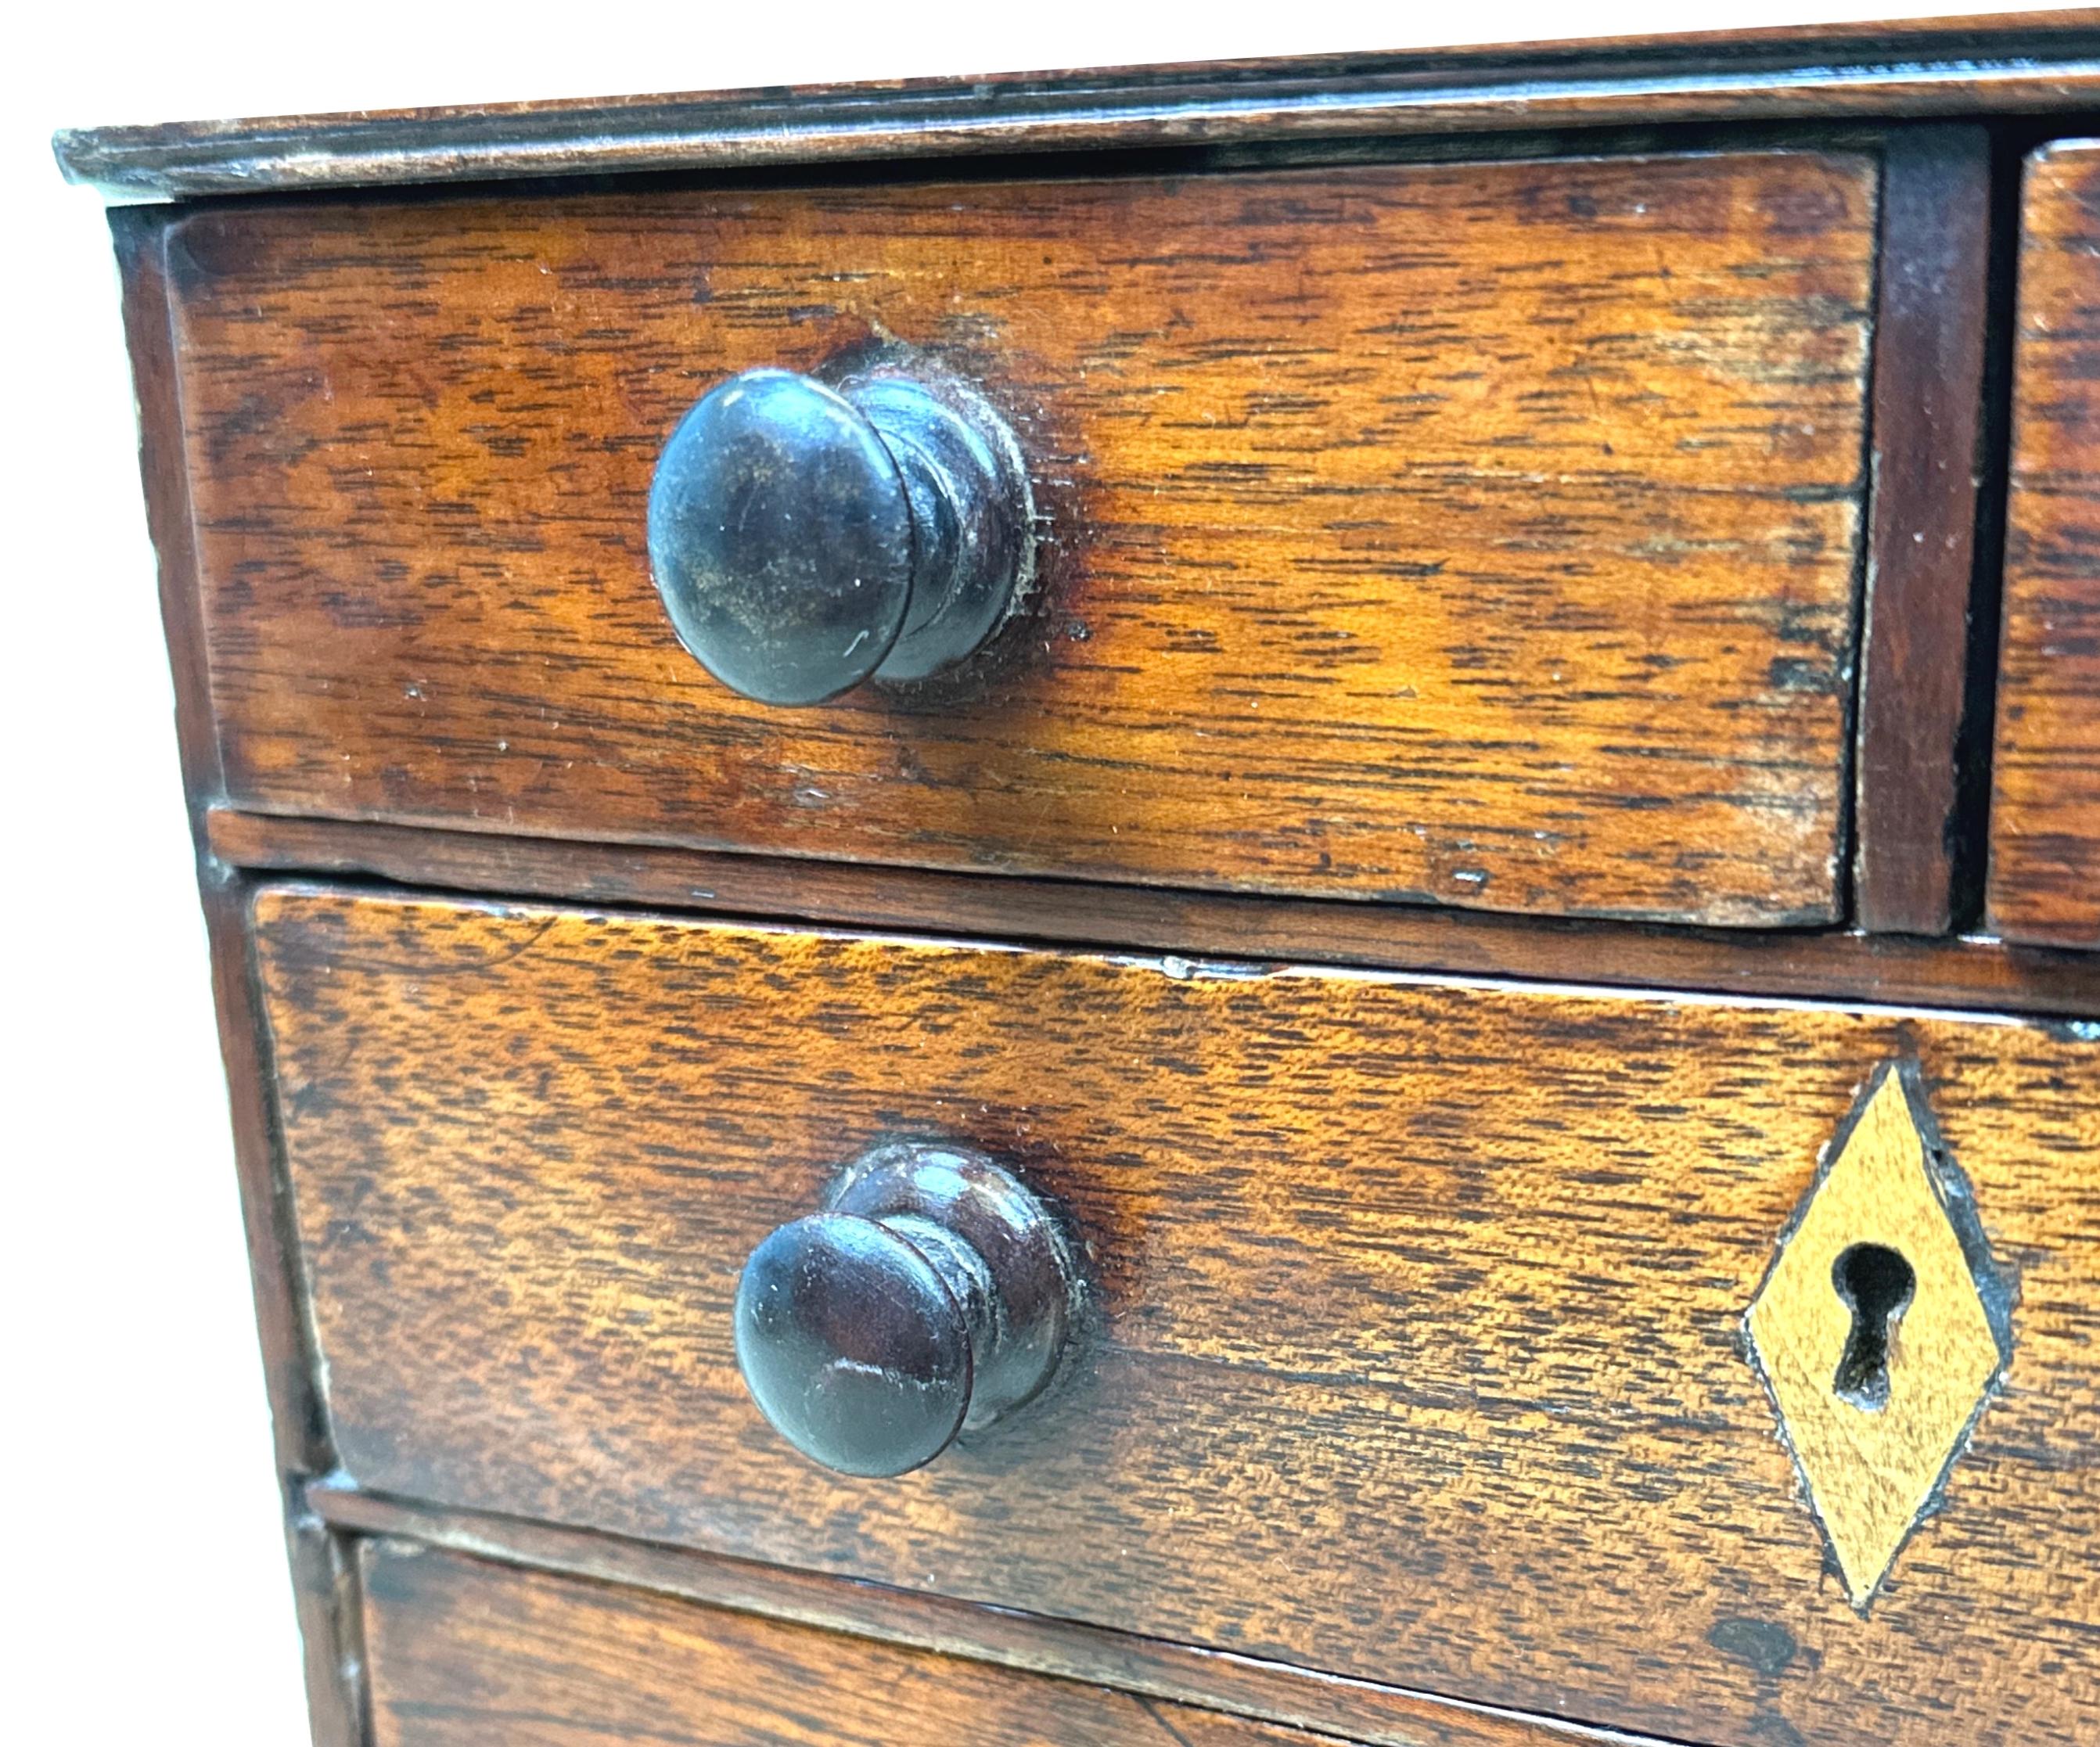 Attrayante commode miniature en mahogany de style géorgien du XVIIIe siècle, comportant deux tiroirs courts et trois tiroirs longs avec des boutons en bois tourné d'origine, reposant sur des pieds en forme d'équerre d'origine.


Cette commode